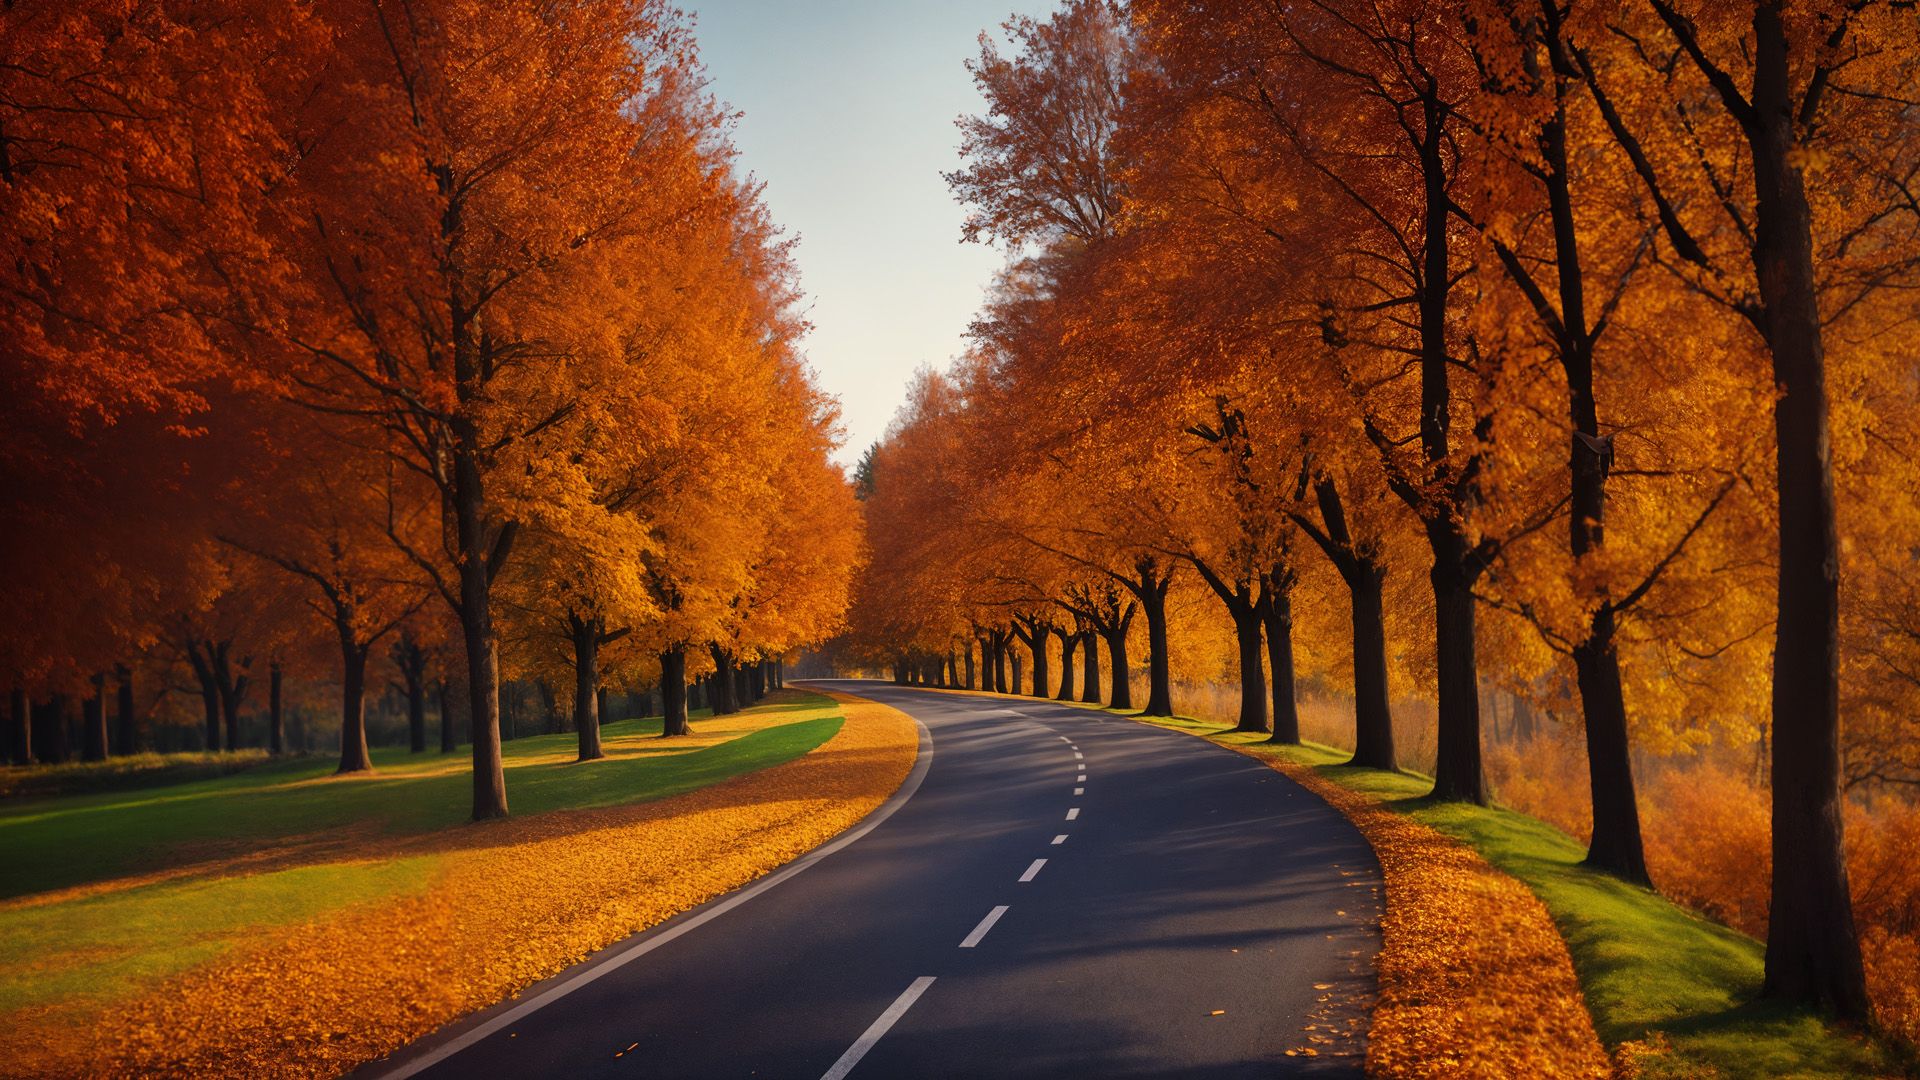 Jesień, aleja, drzewa, obraz drogi, ogniste kolory, liście, kolorowy dywan, słońce, ciepło, magia, zmieniająca się pora roku, urok